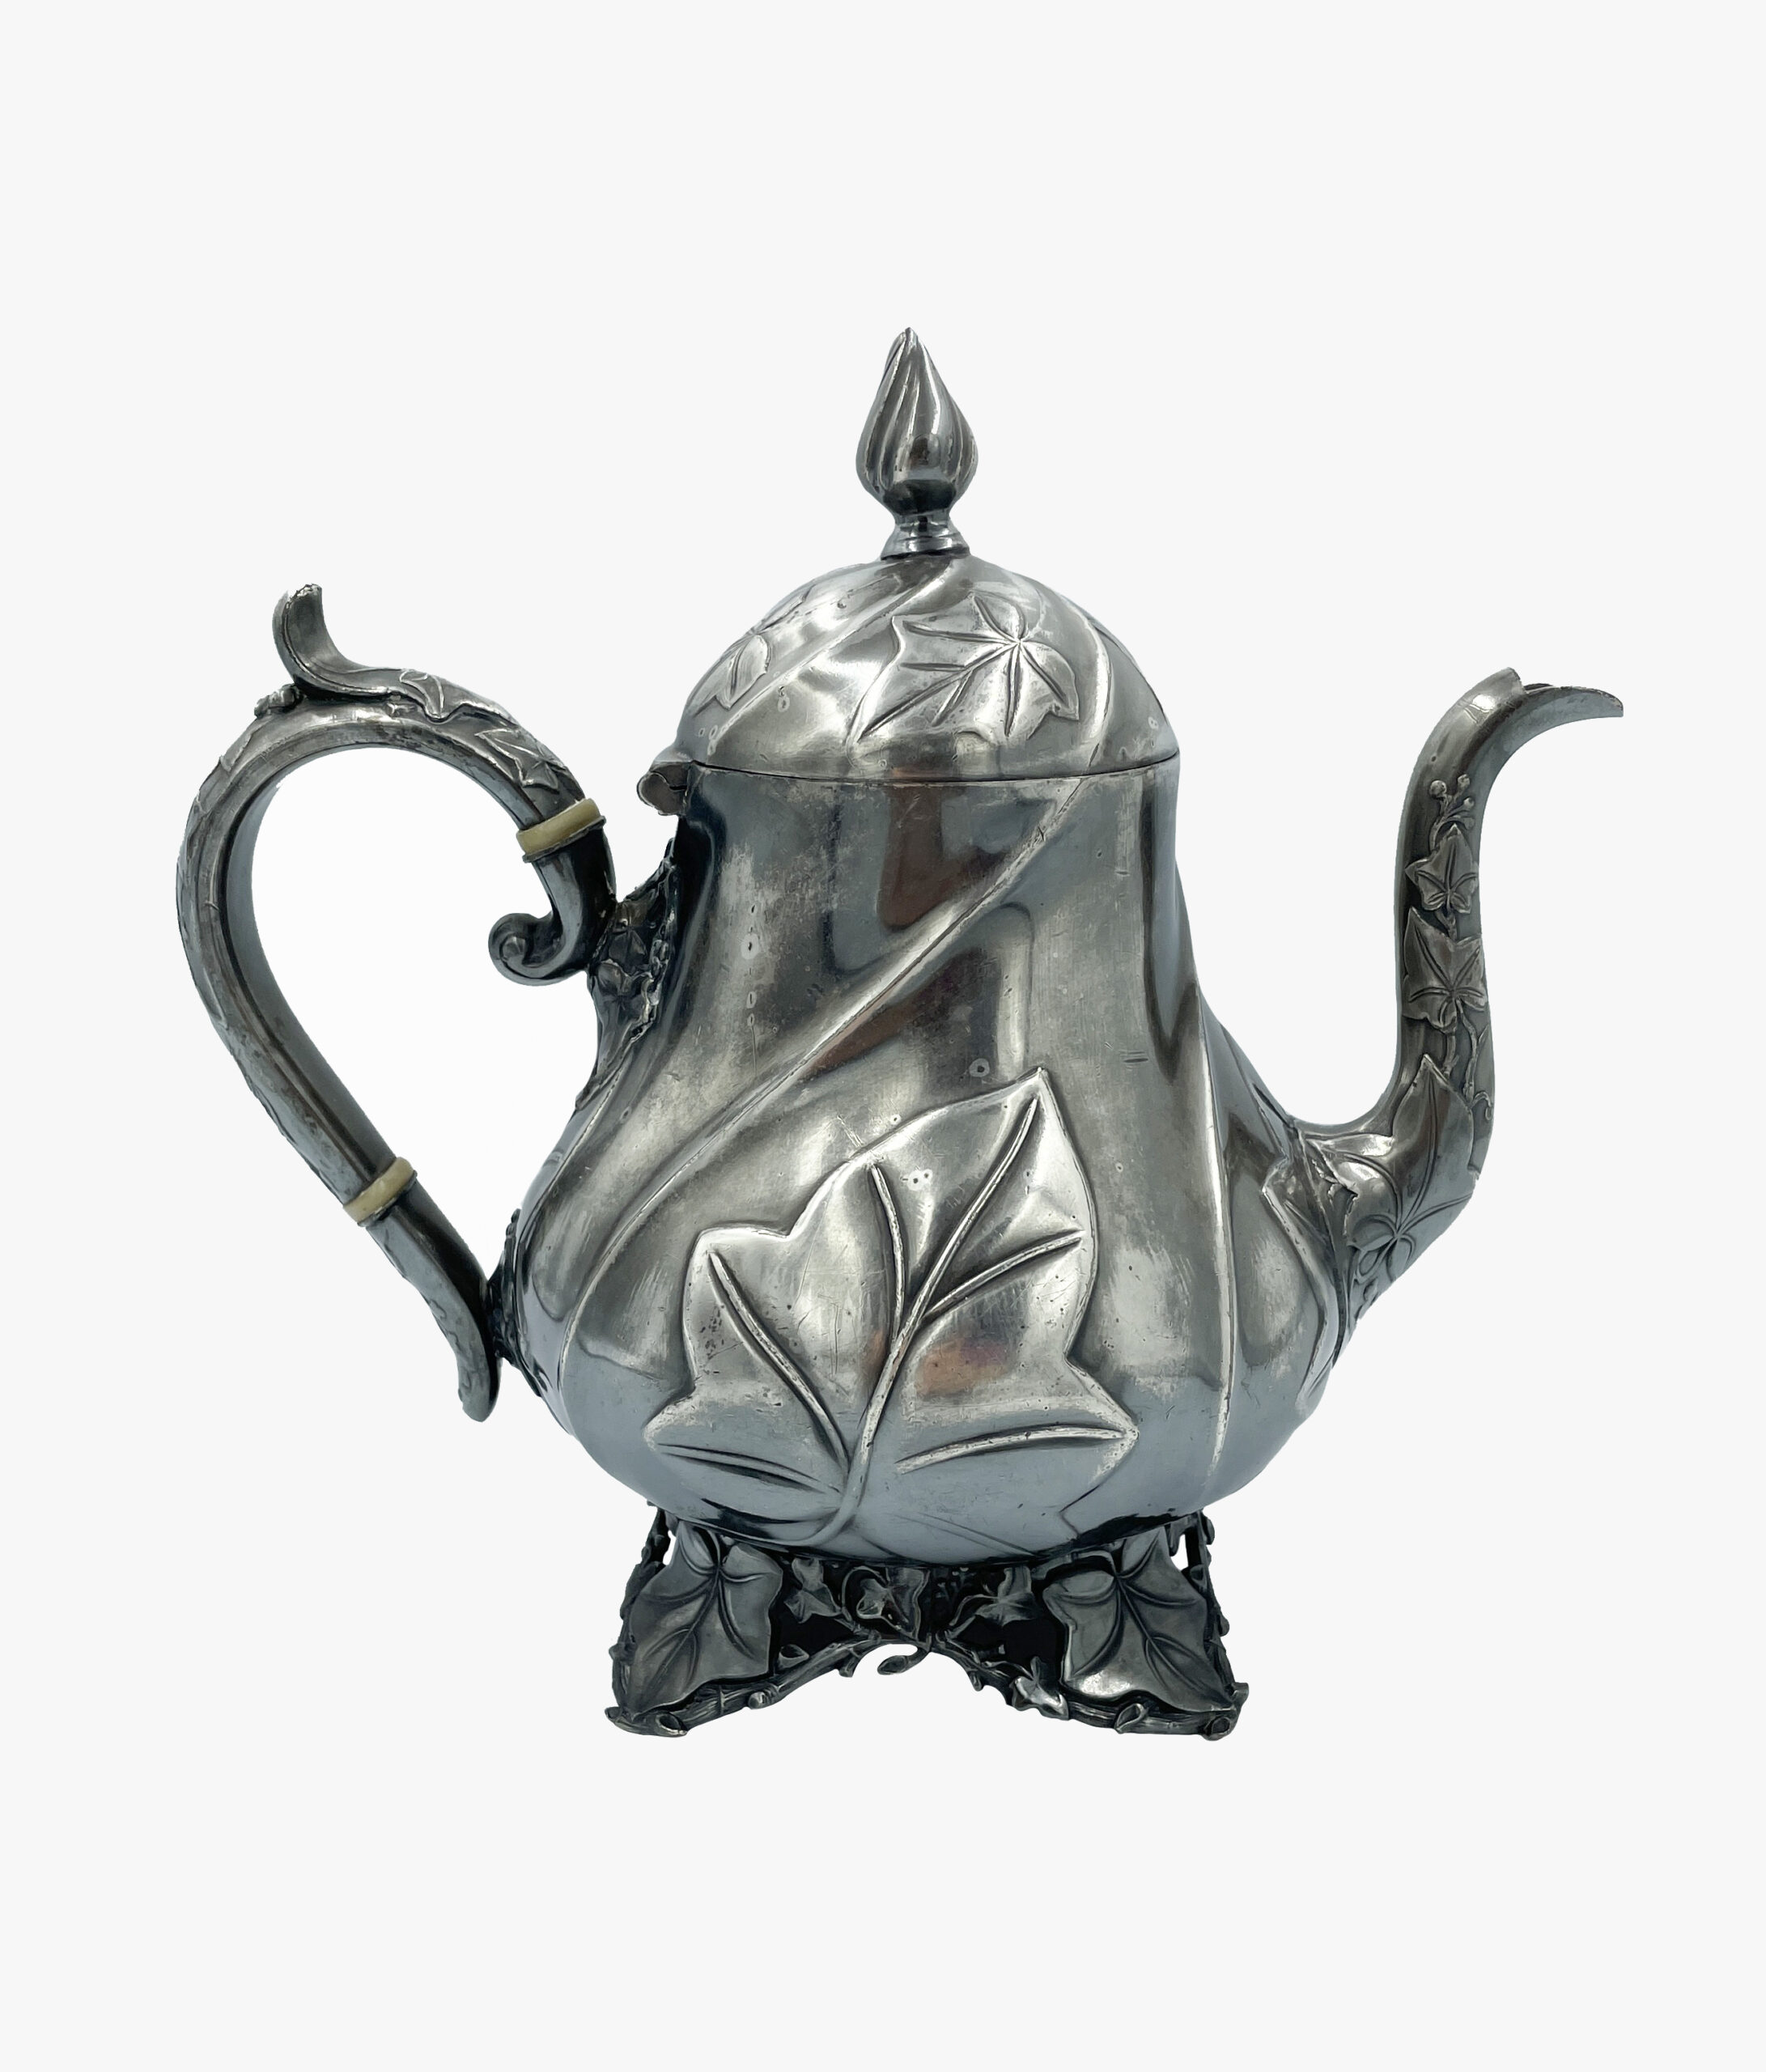 Jameson Dixon & Sons antique teapot, 1950s-